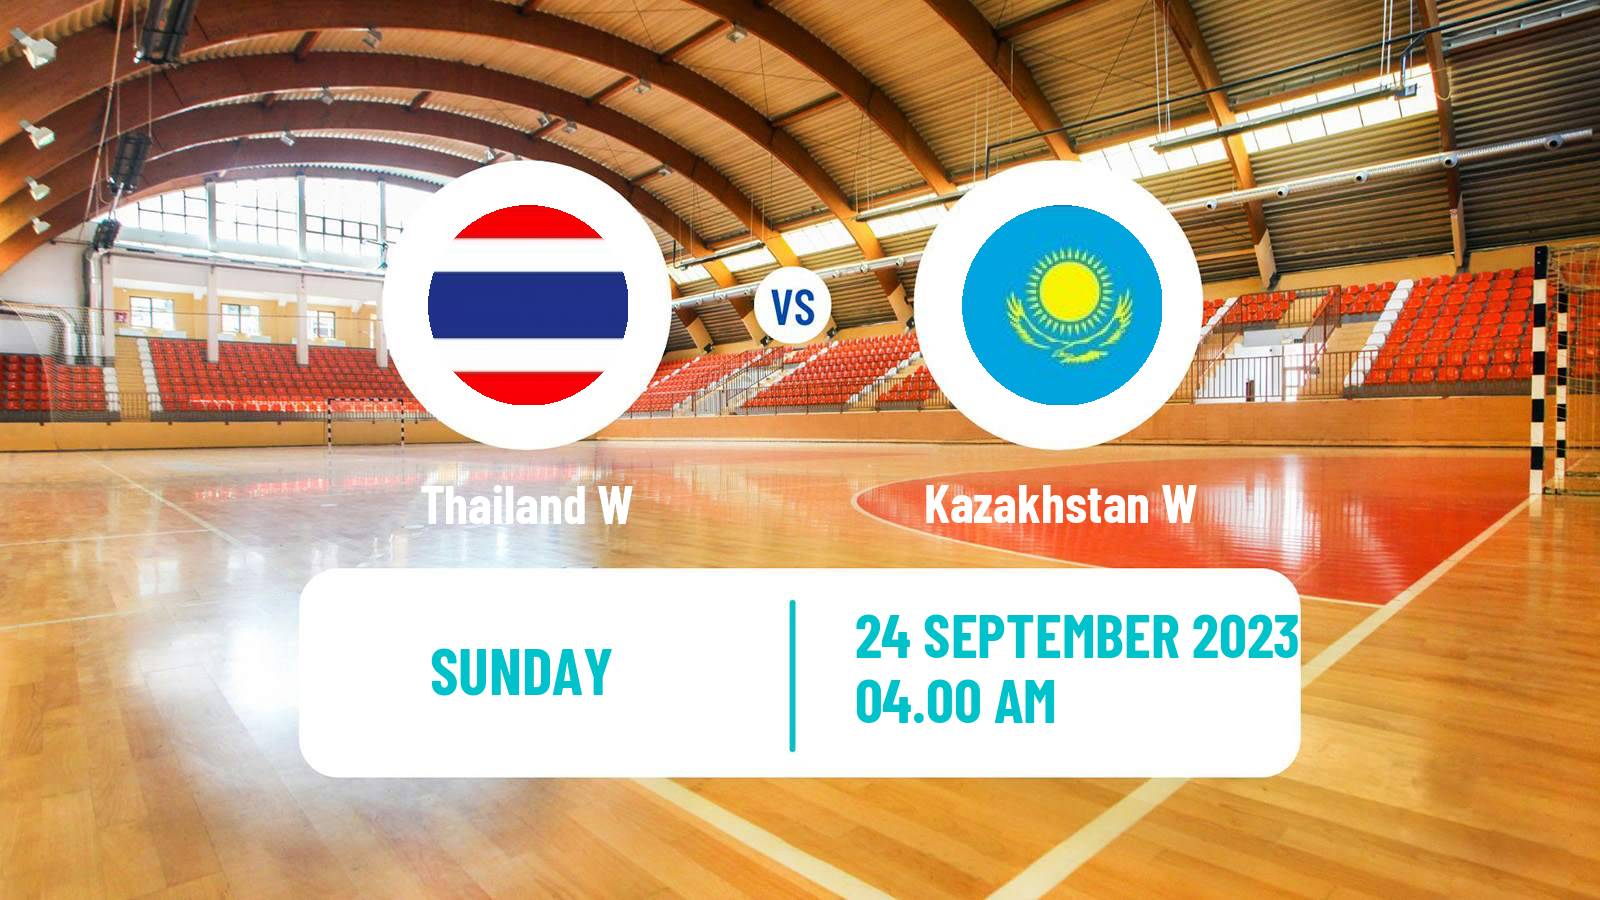 Handball Asian Games Handball Women Thailand W - Kazakhstan W